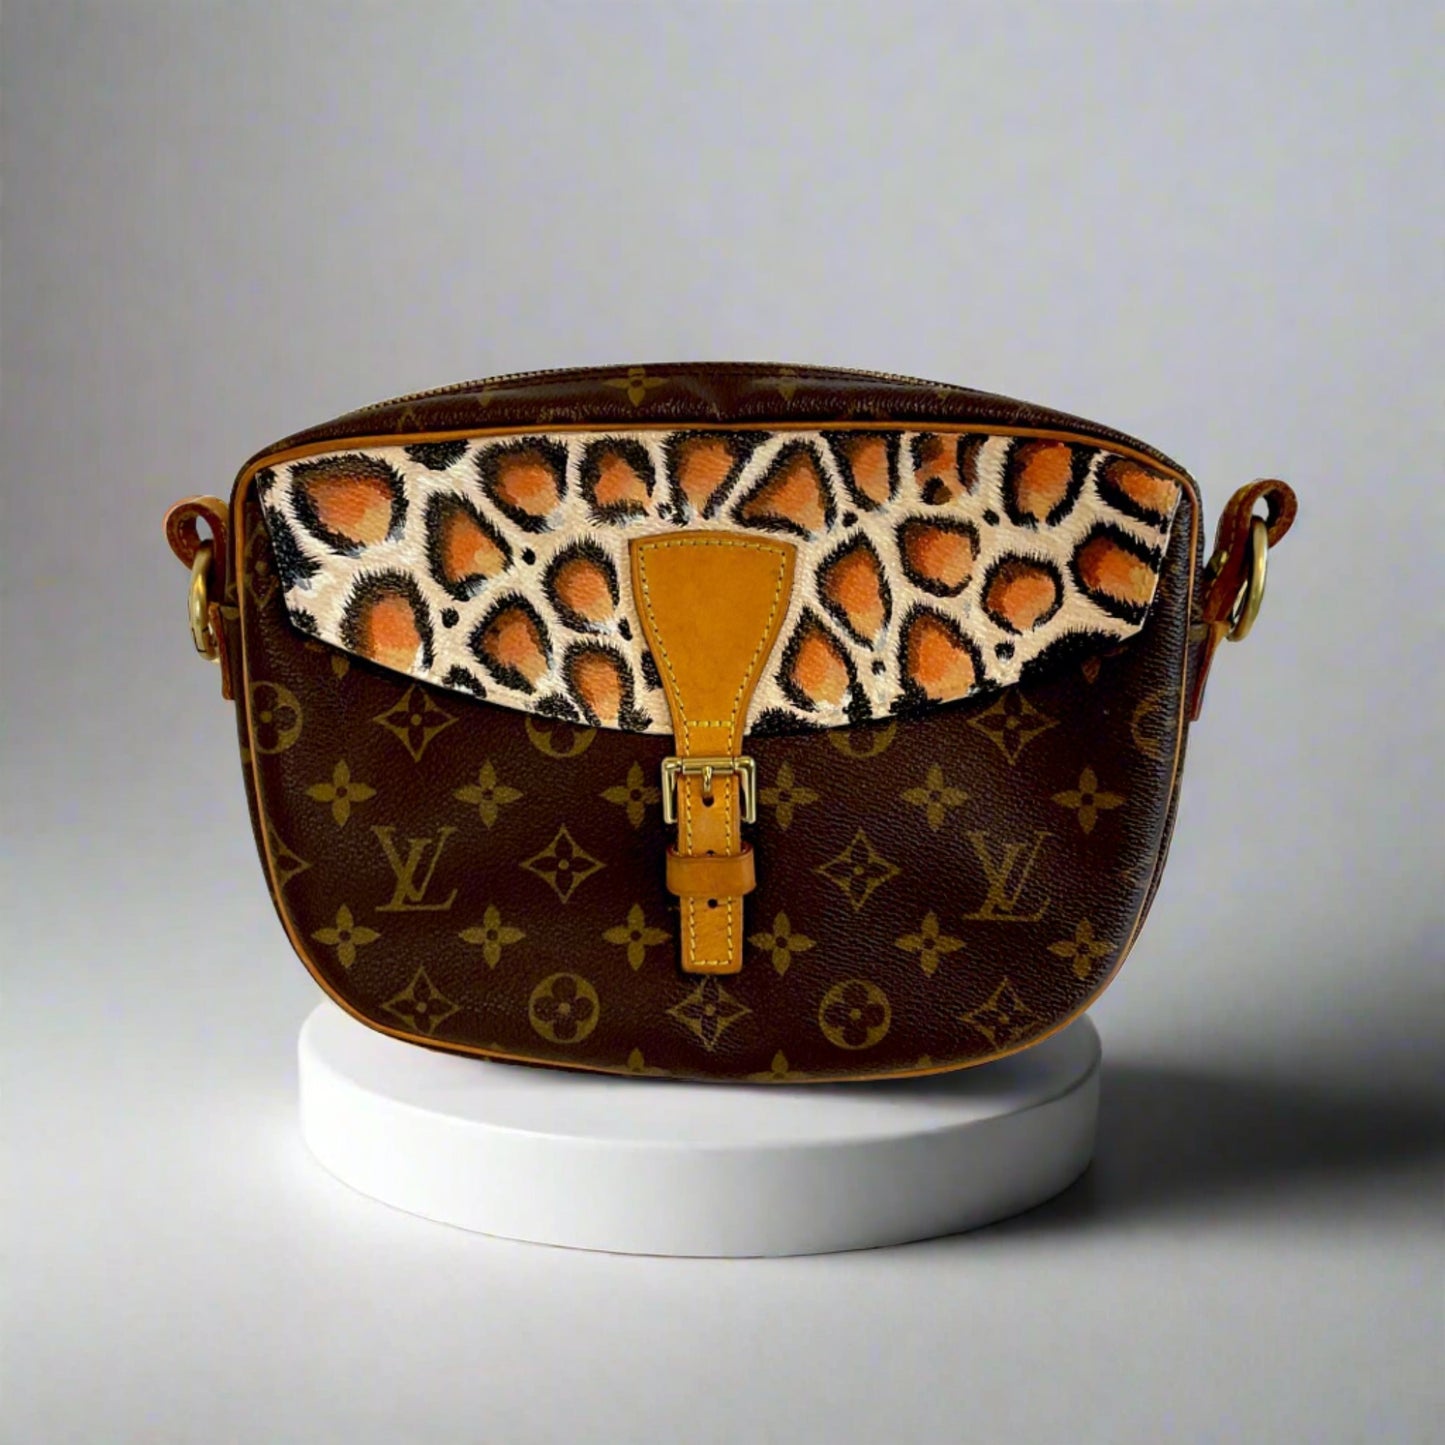 Louis Vuitton, Bags, Authentic Louis Vuitton Monogram Jeune Fille Pm  Shoulder Bag